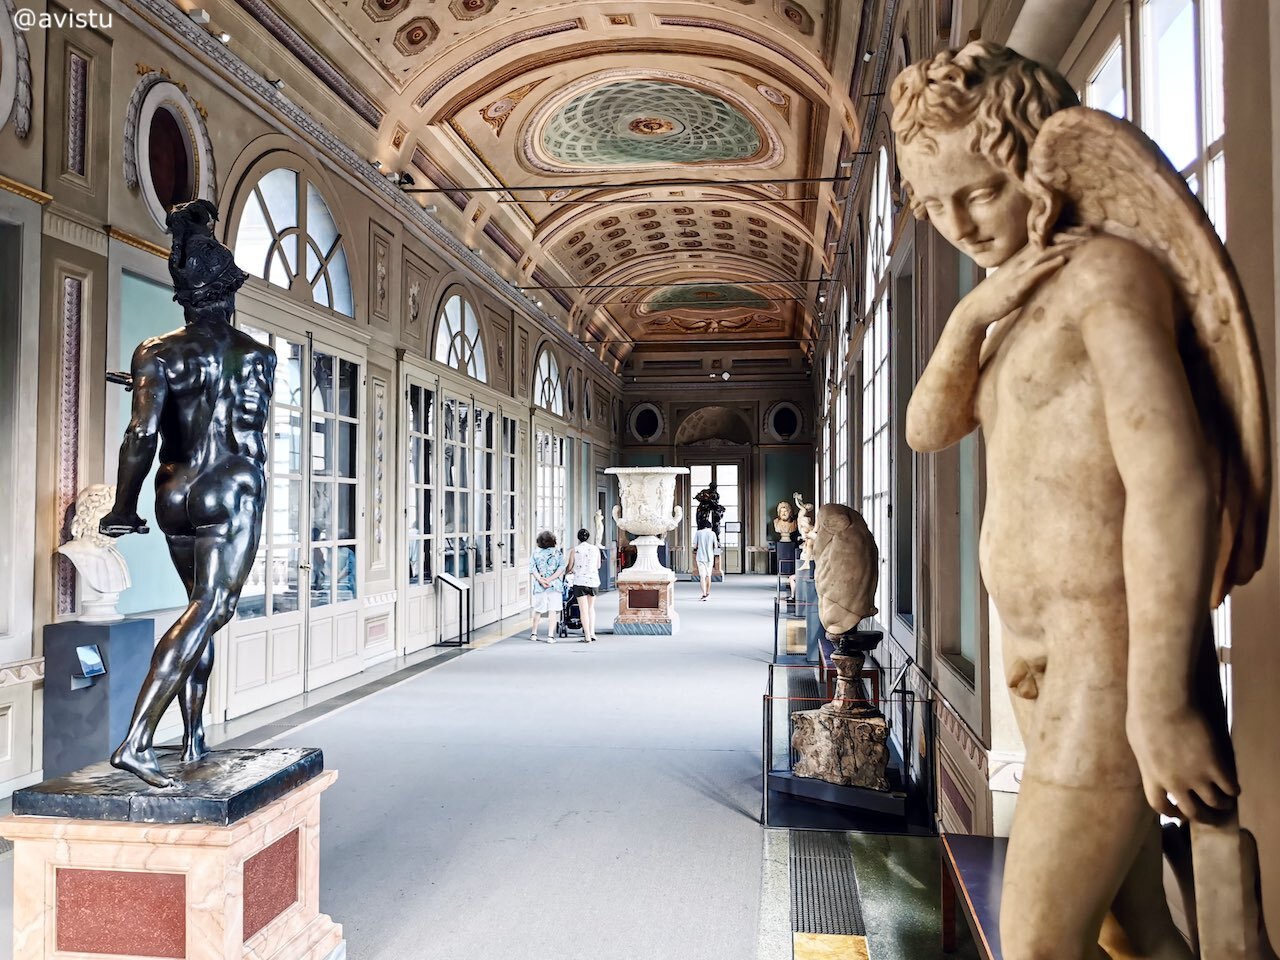 Esculturas en uno de los pisos que une las dos alas de la Galería Uffizi en Florencia [(c)Foto: @avistu]